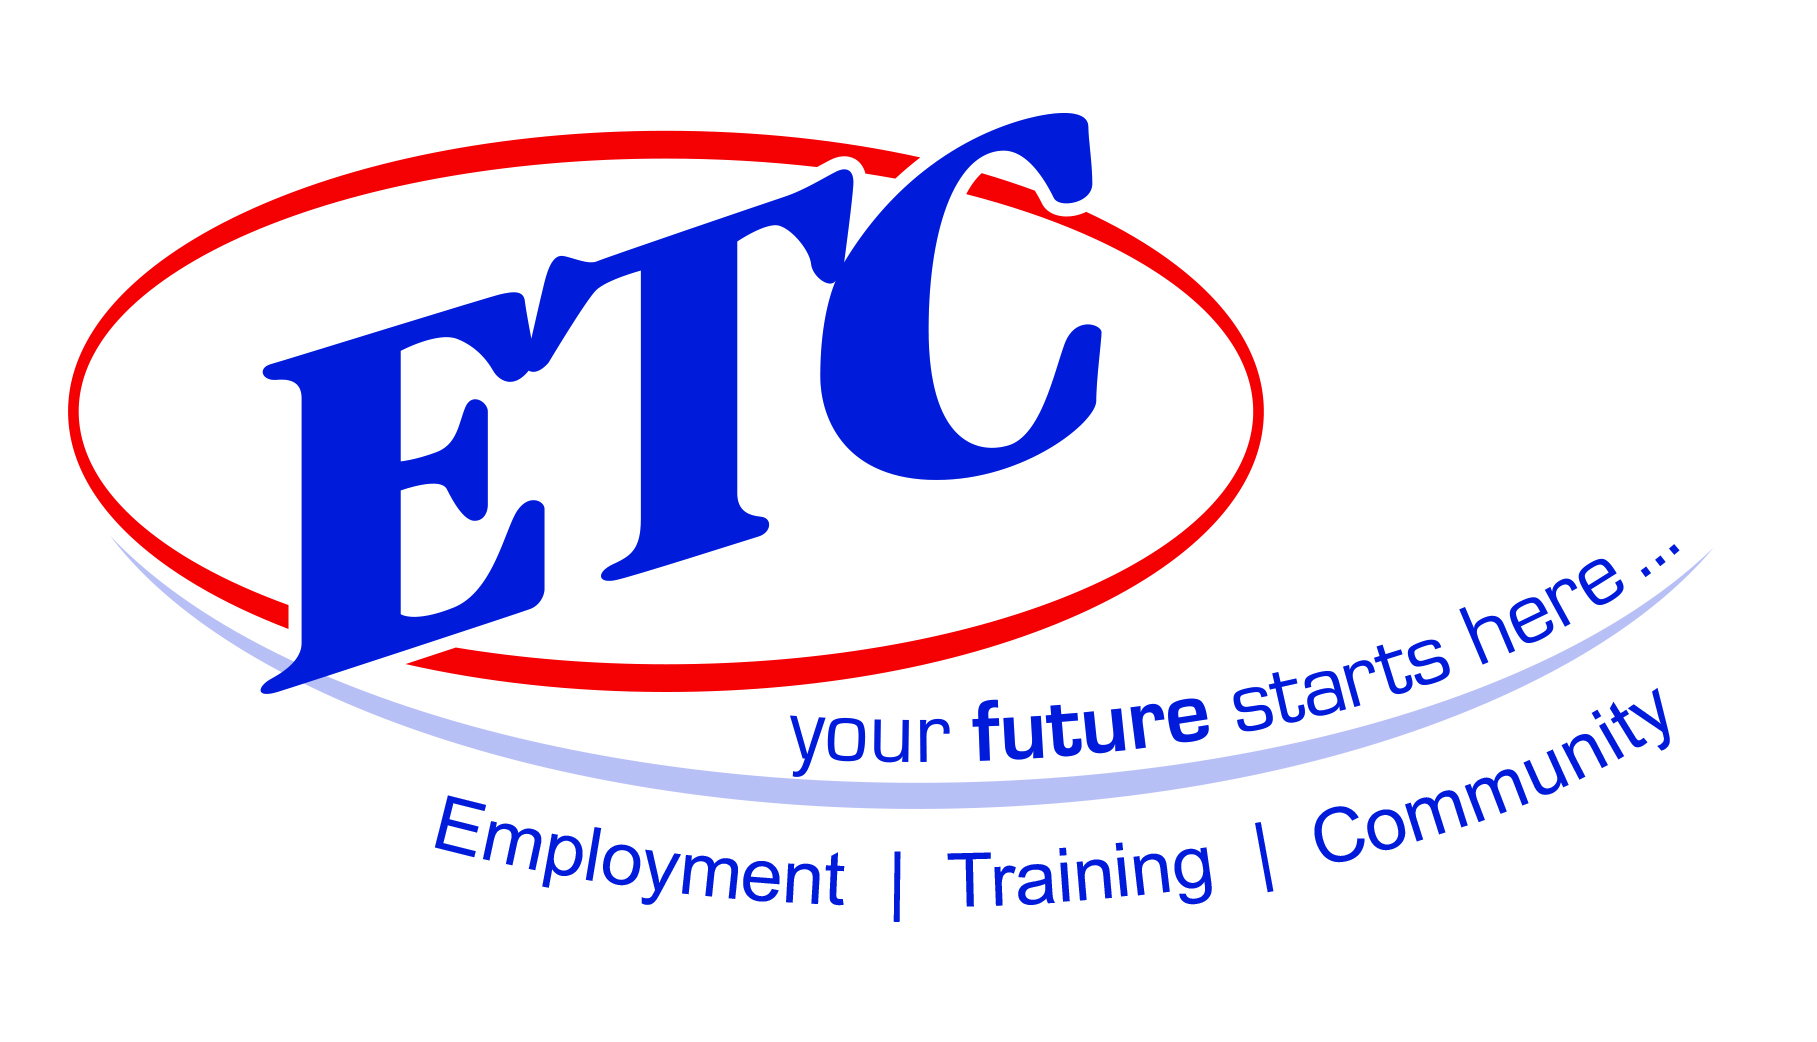 Enterprise & Training Company Limited (ETC)